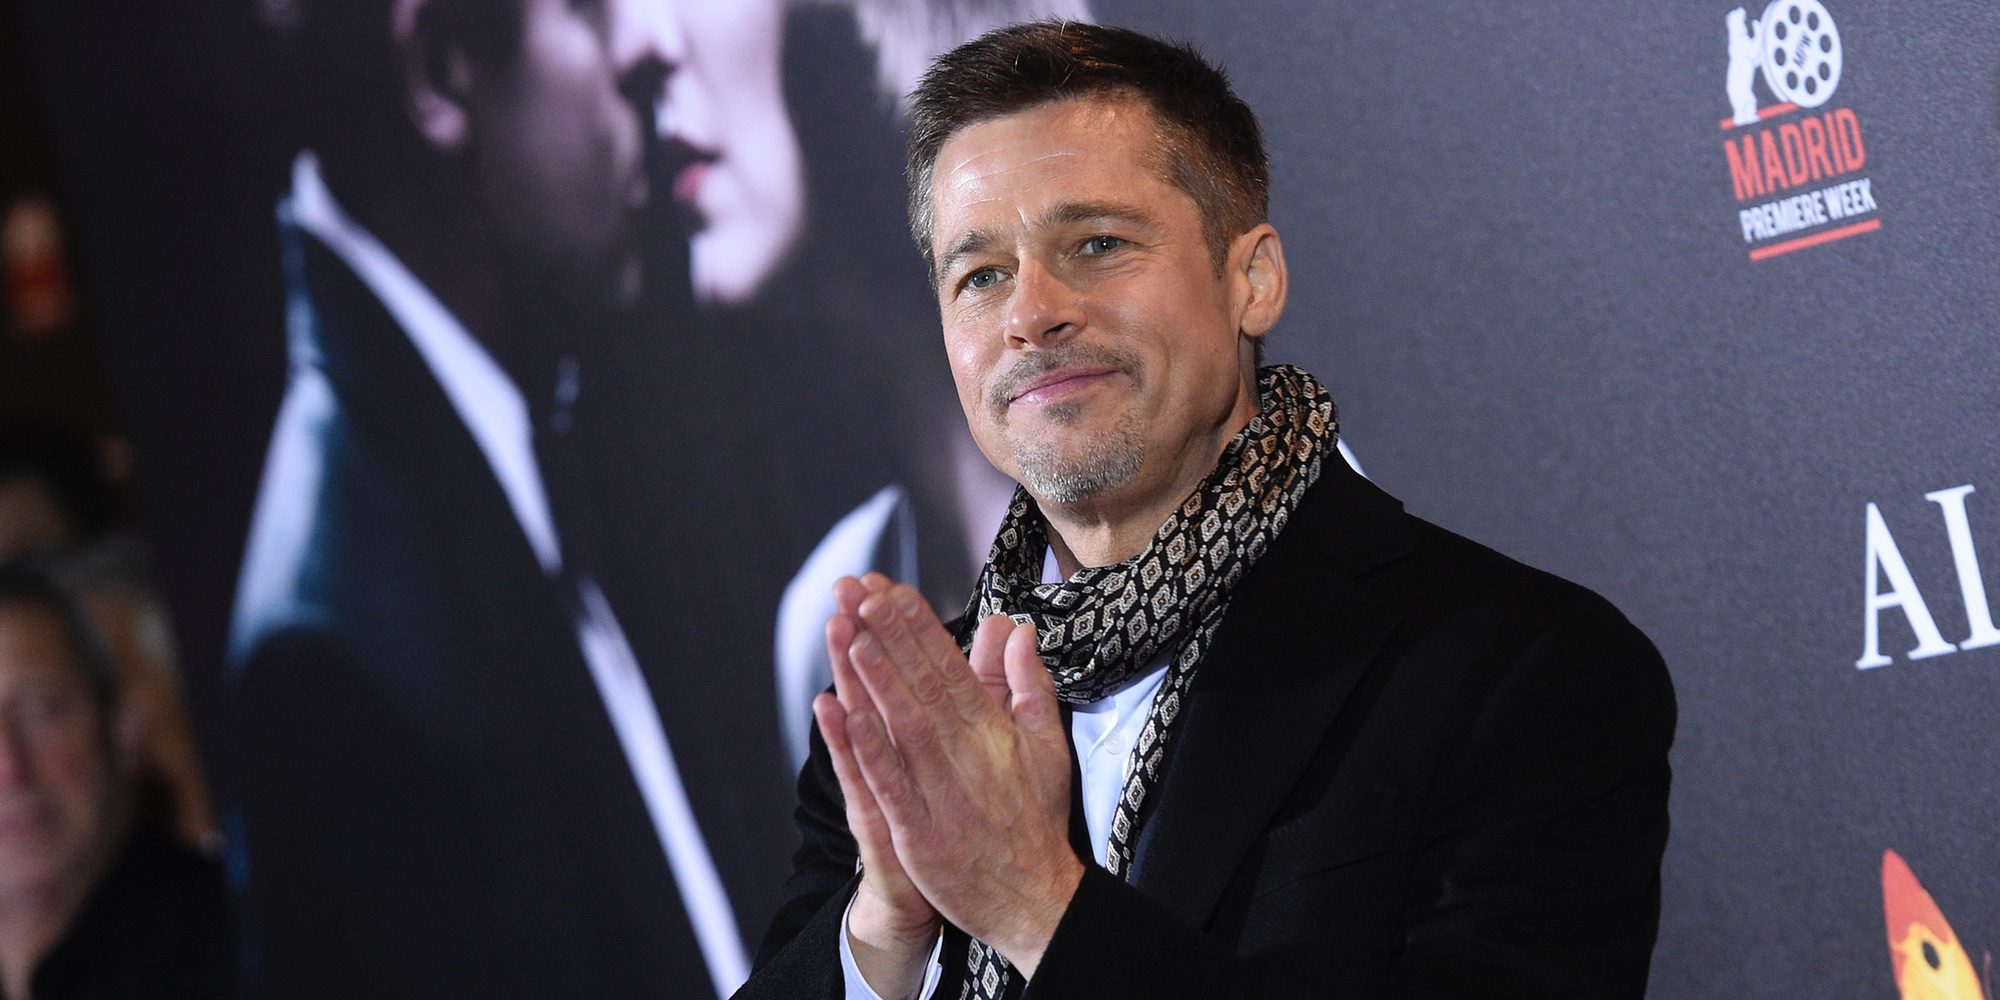 Brad Pitt sigue confesando errores: "Cada vez que me meto en problemas, es por mi arrogancia"